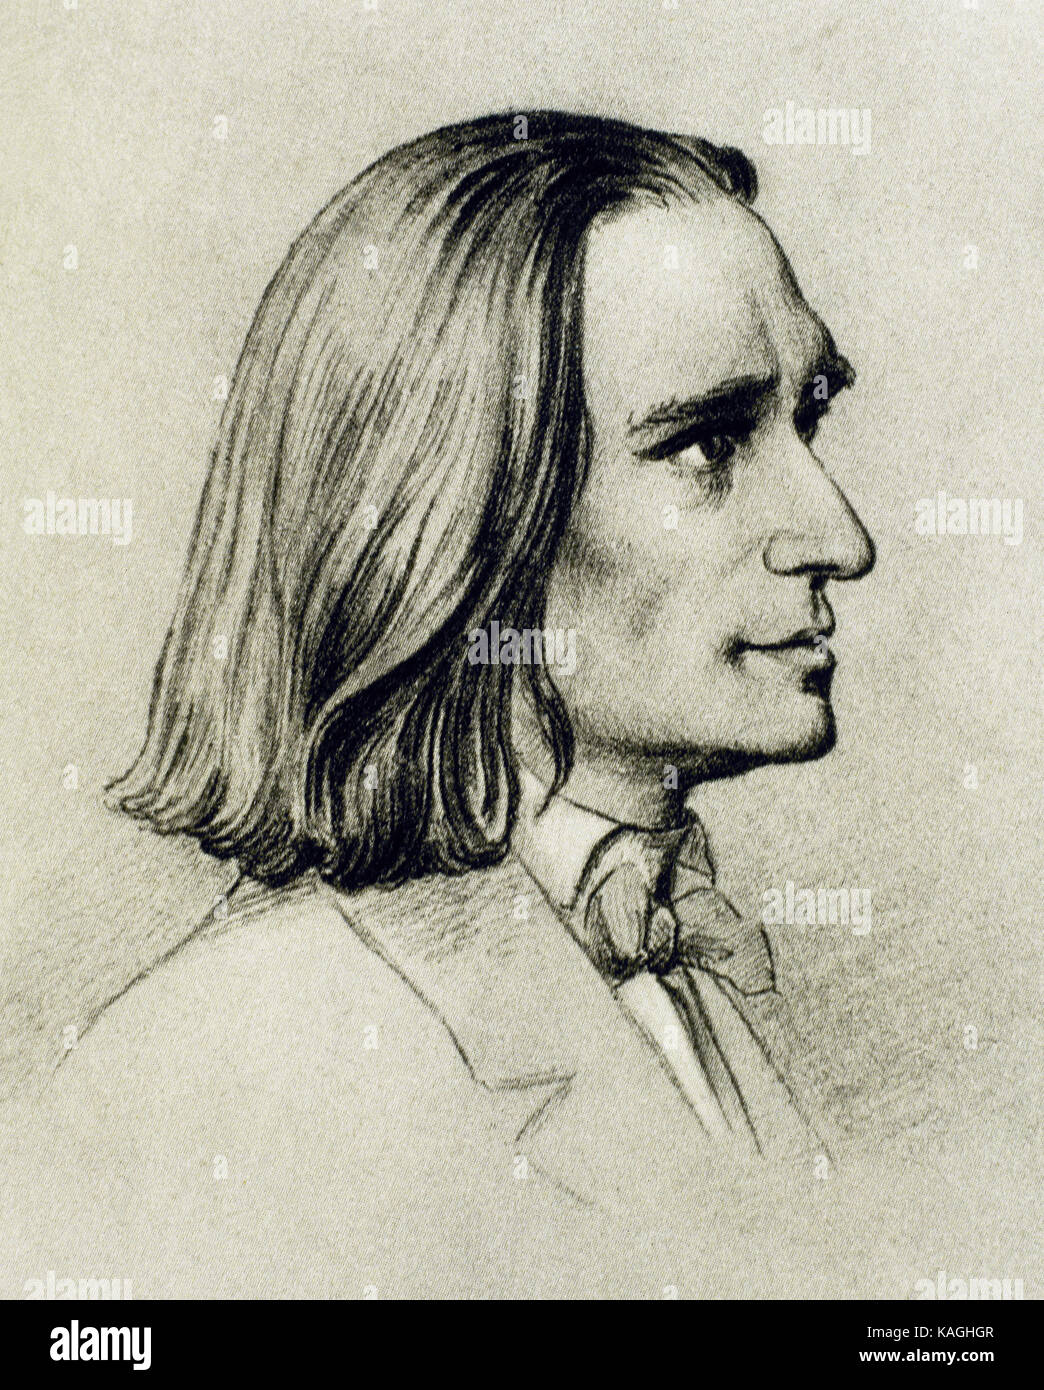 Franz Liszt (1811-1886) compositeur et pianiste hongrois.. portrait. dessin de Friedrich preller l'ancien (1804-1878). musée liszt weimar.. L'Allemagne. Banque D'Images